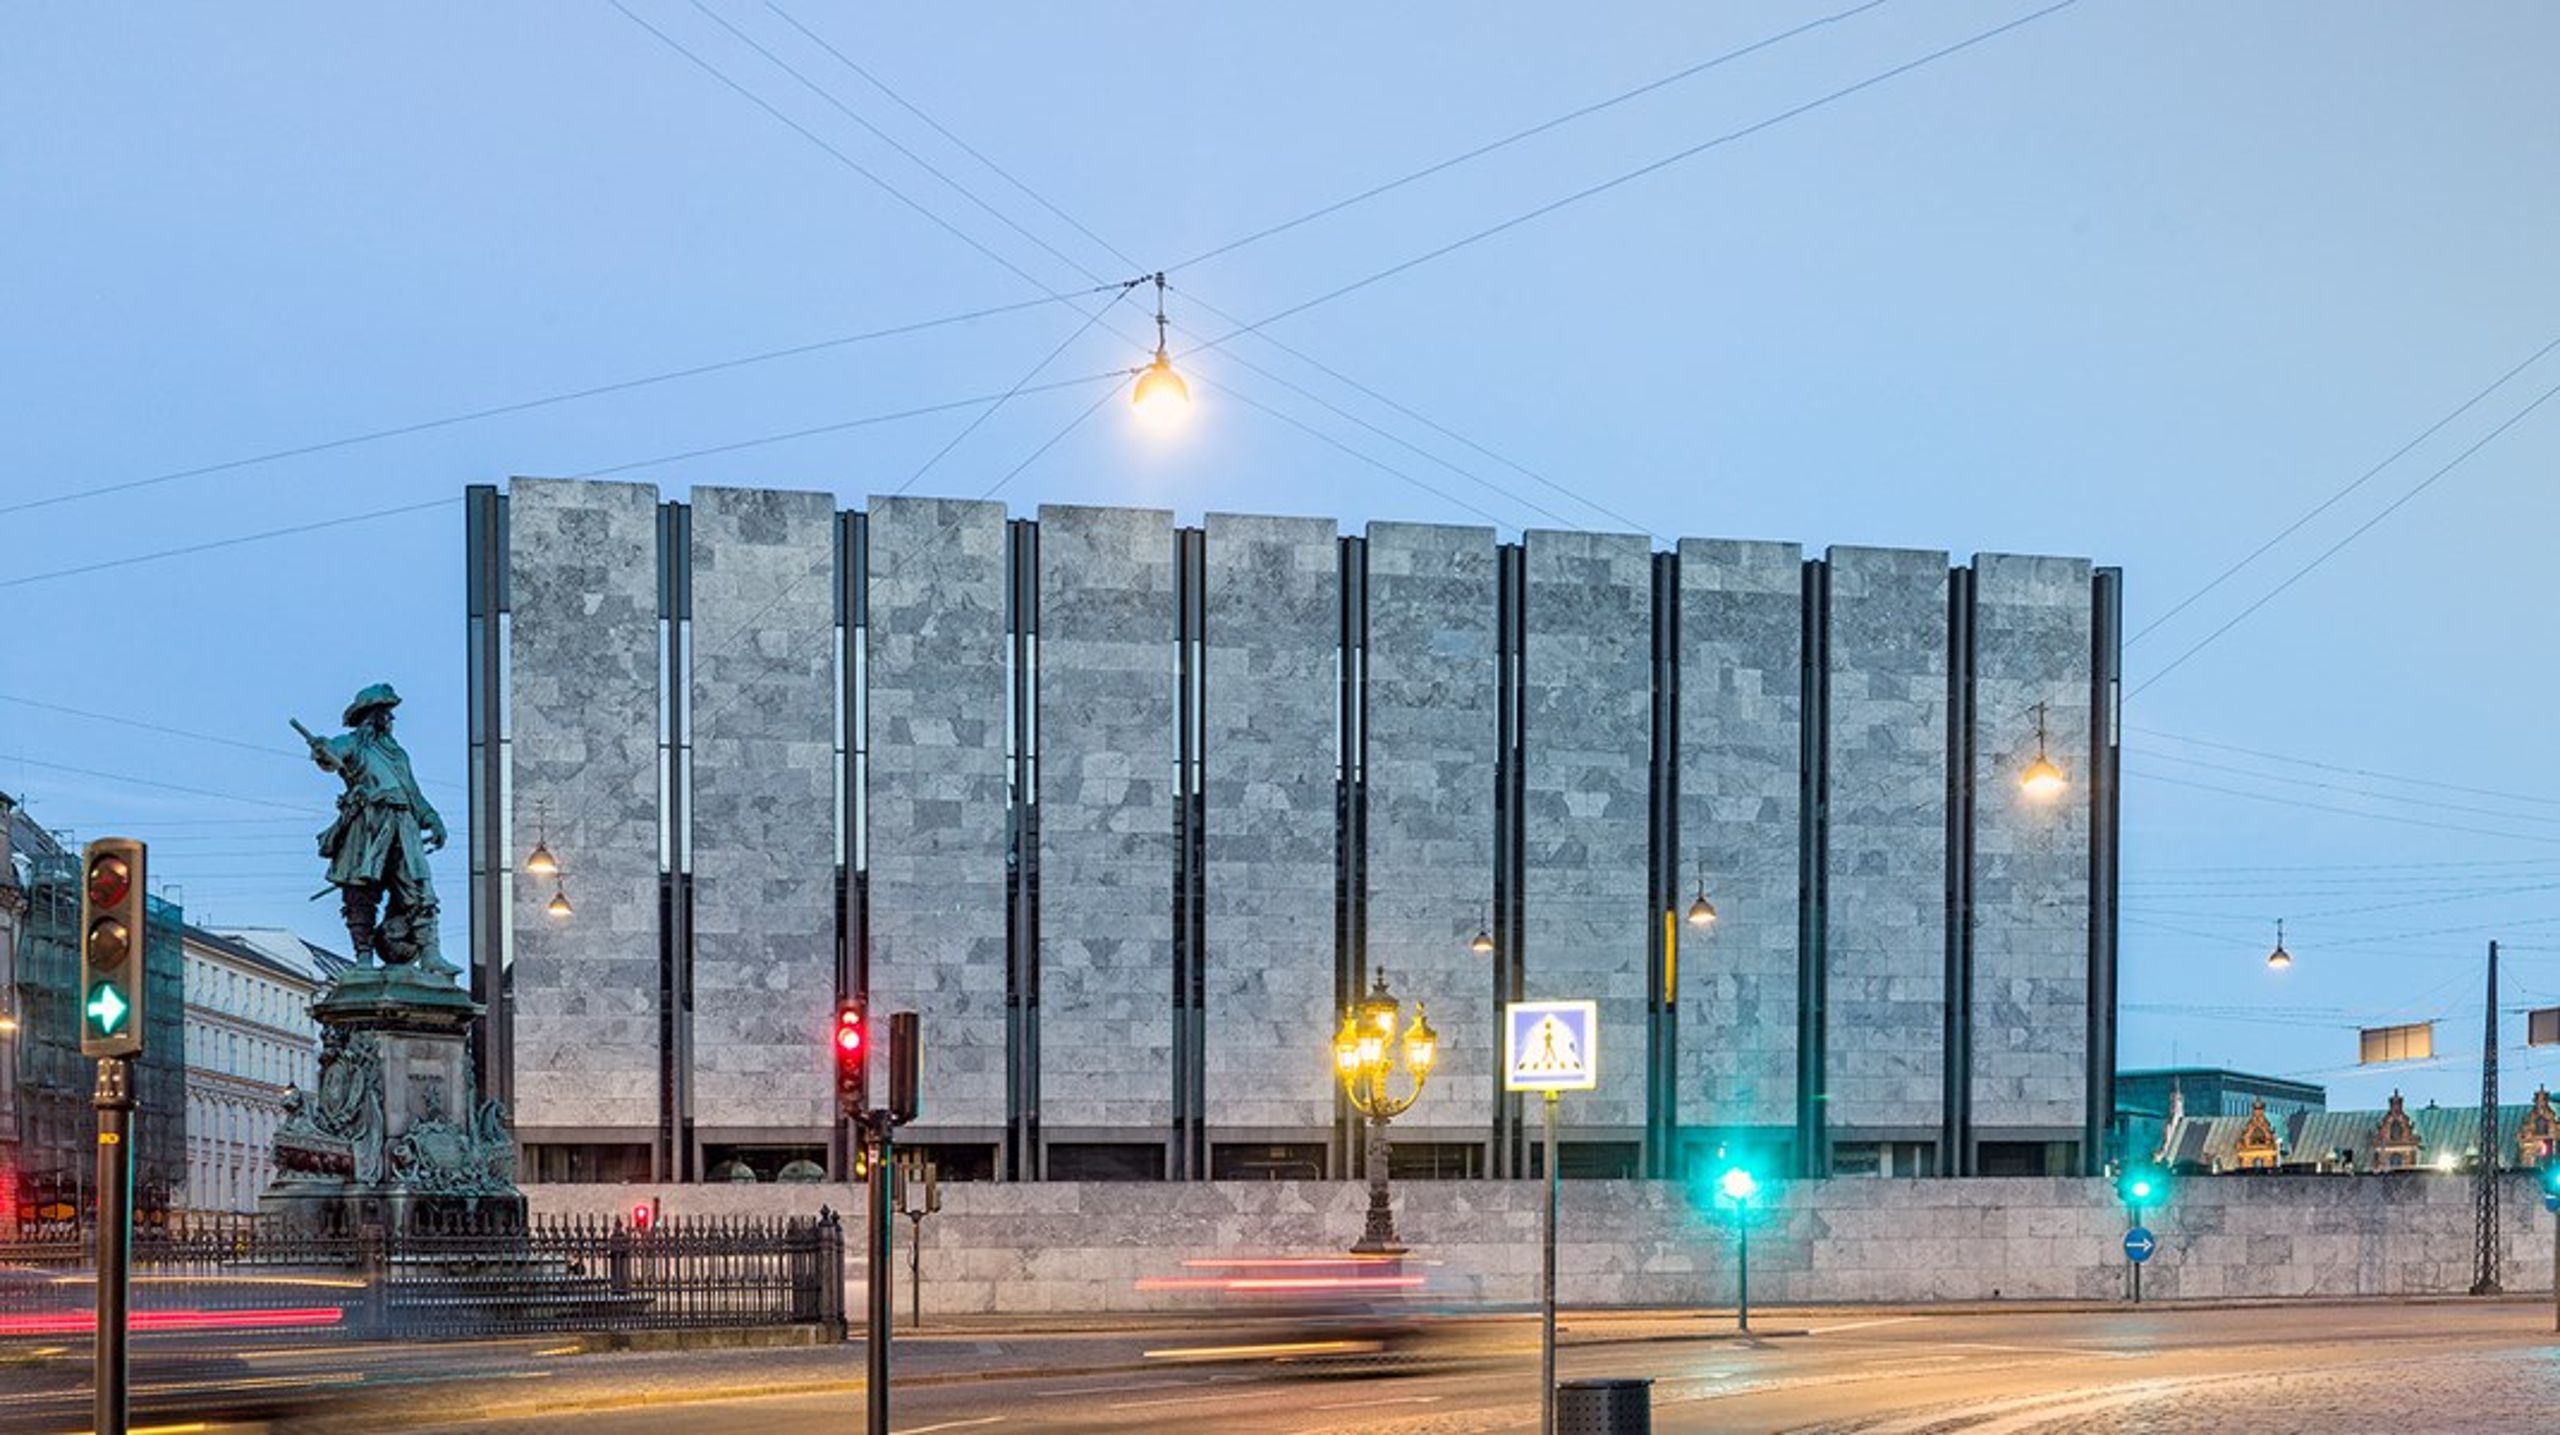 Nationalbankens hovedkvarter i København&nbsp;stod færdig i 1975 og er tegnet af Arne Jacobsen. Bygningen blev fredet i 2009.&nbsp;